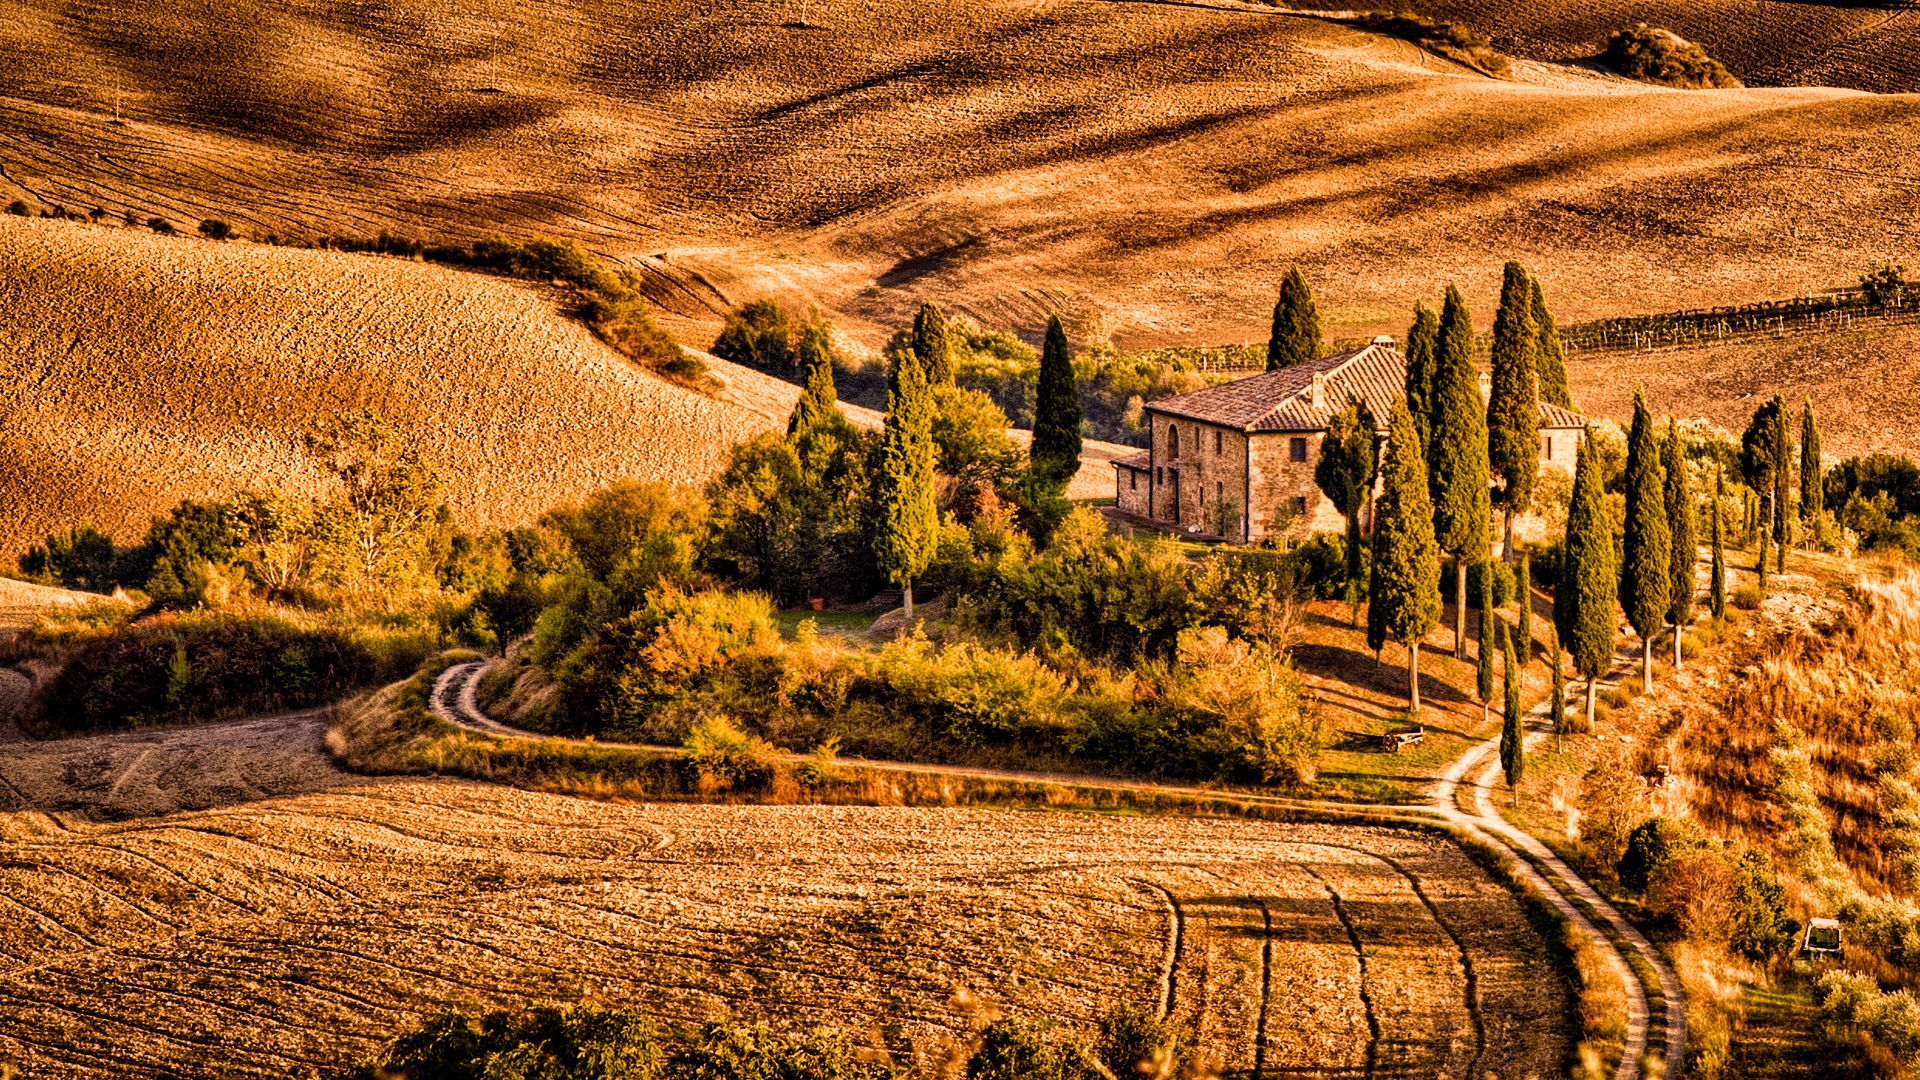 Italian matkat - Toscanan patikointimatka